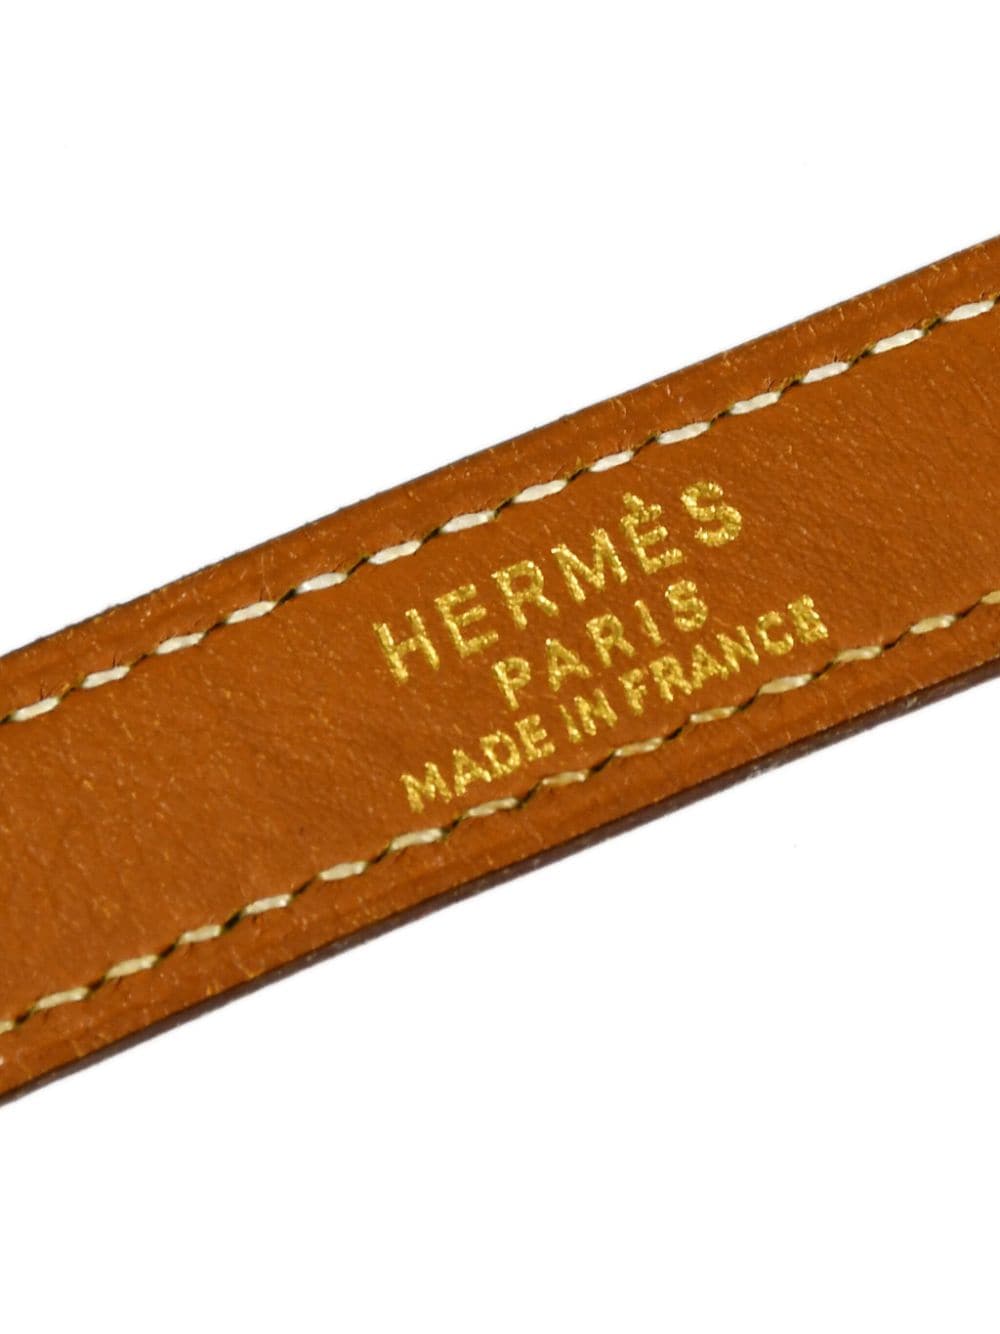 Hermes 1990-2000 pre-owned Sac De Golf Caddie shoulder bag - ShopStyle